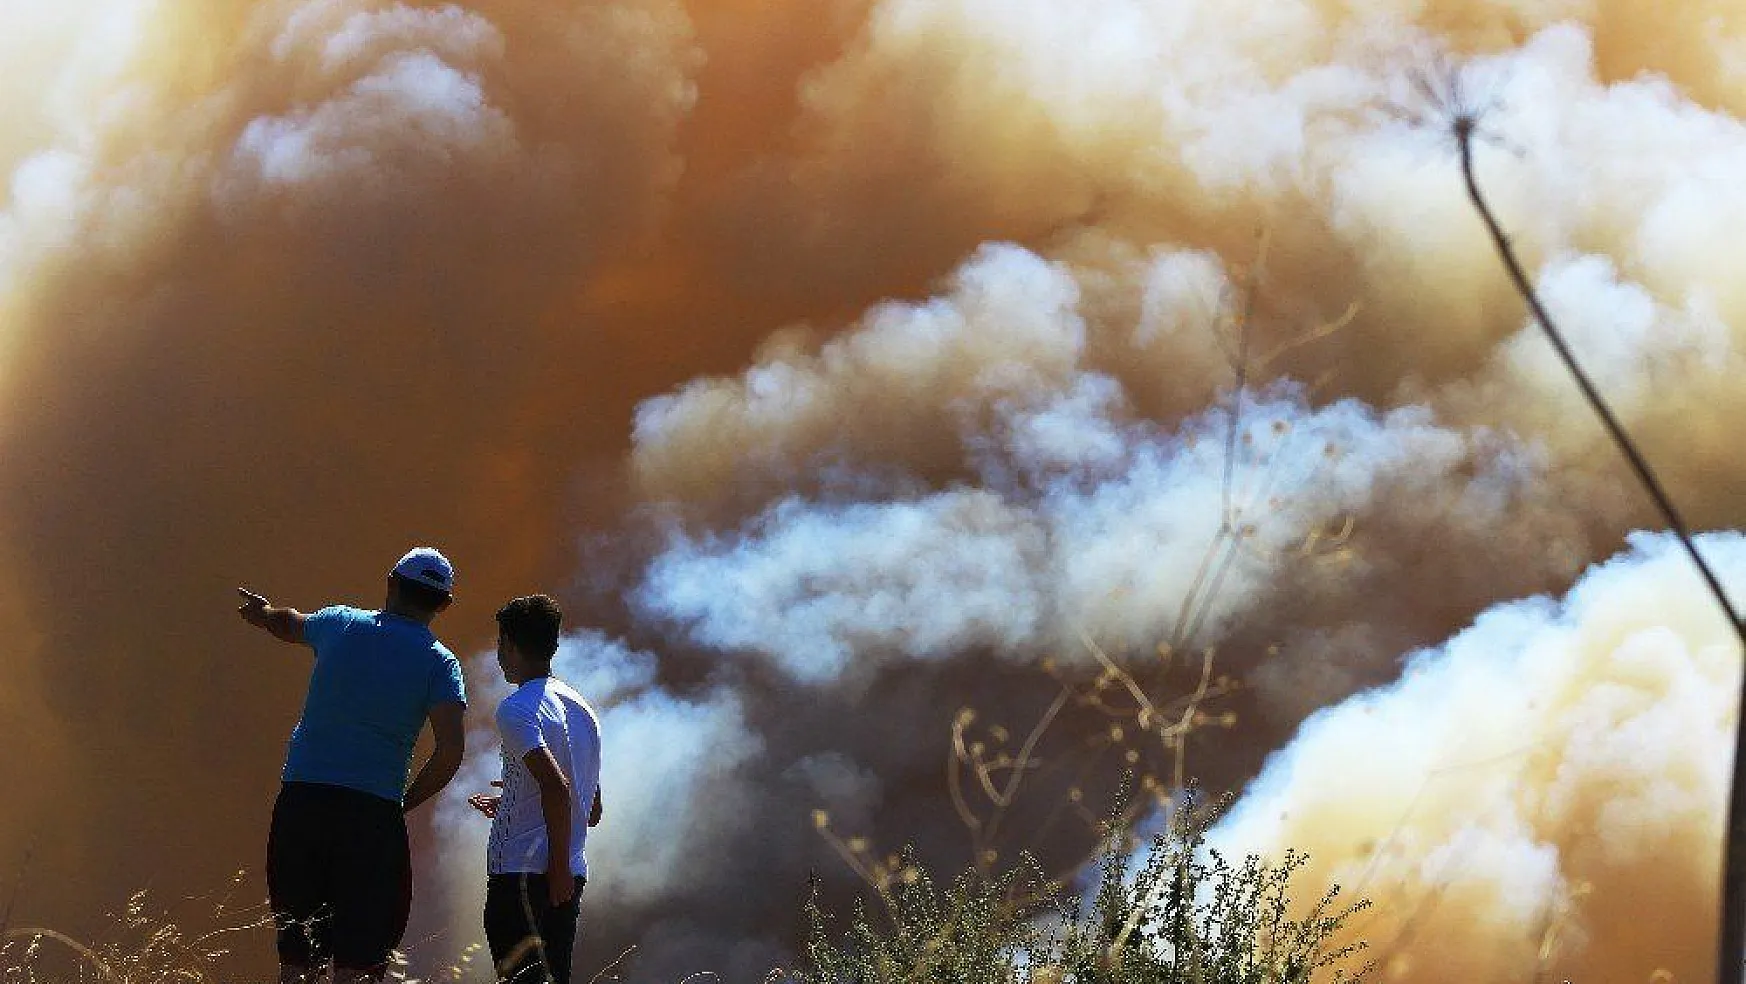 Başkan Gürün: 'Milas ve Mumcular'daki yangınlarda sabotaj ihtimali araştırılmalı'